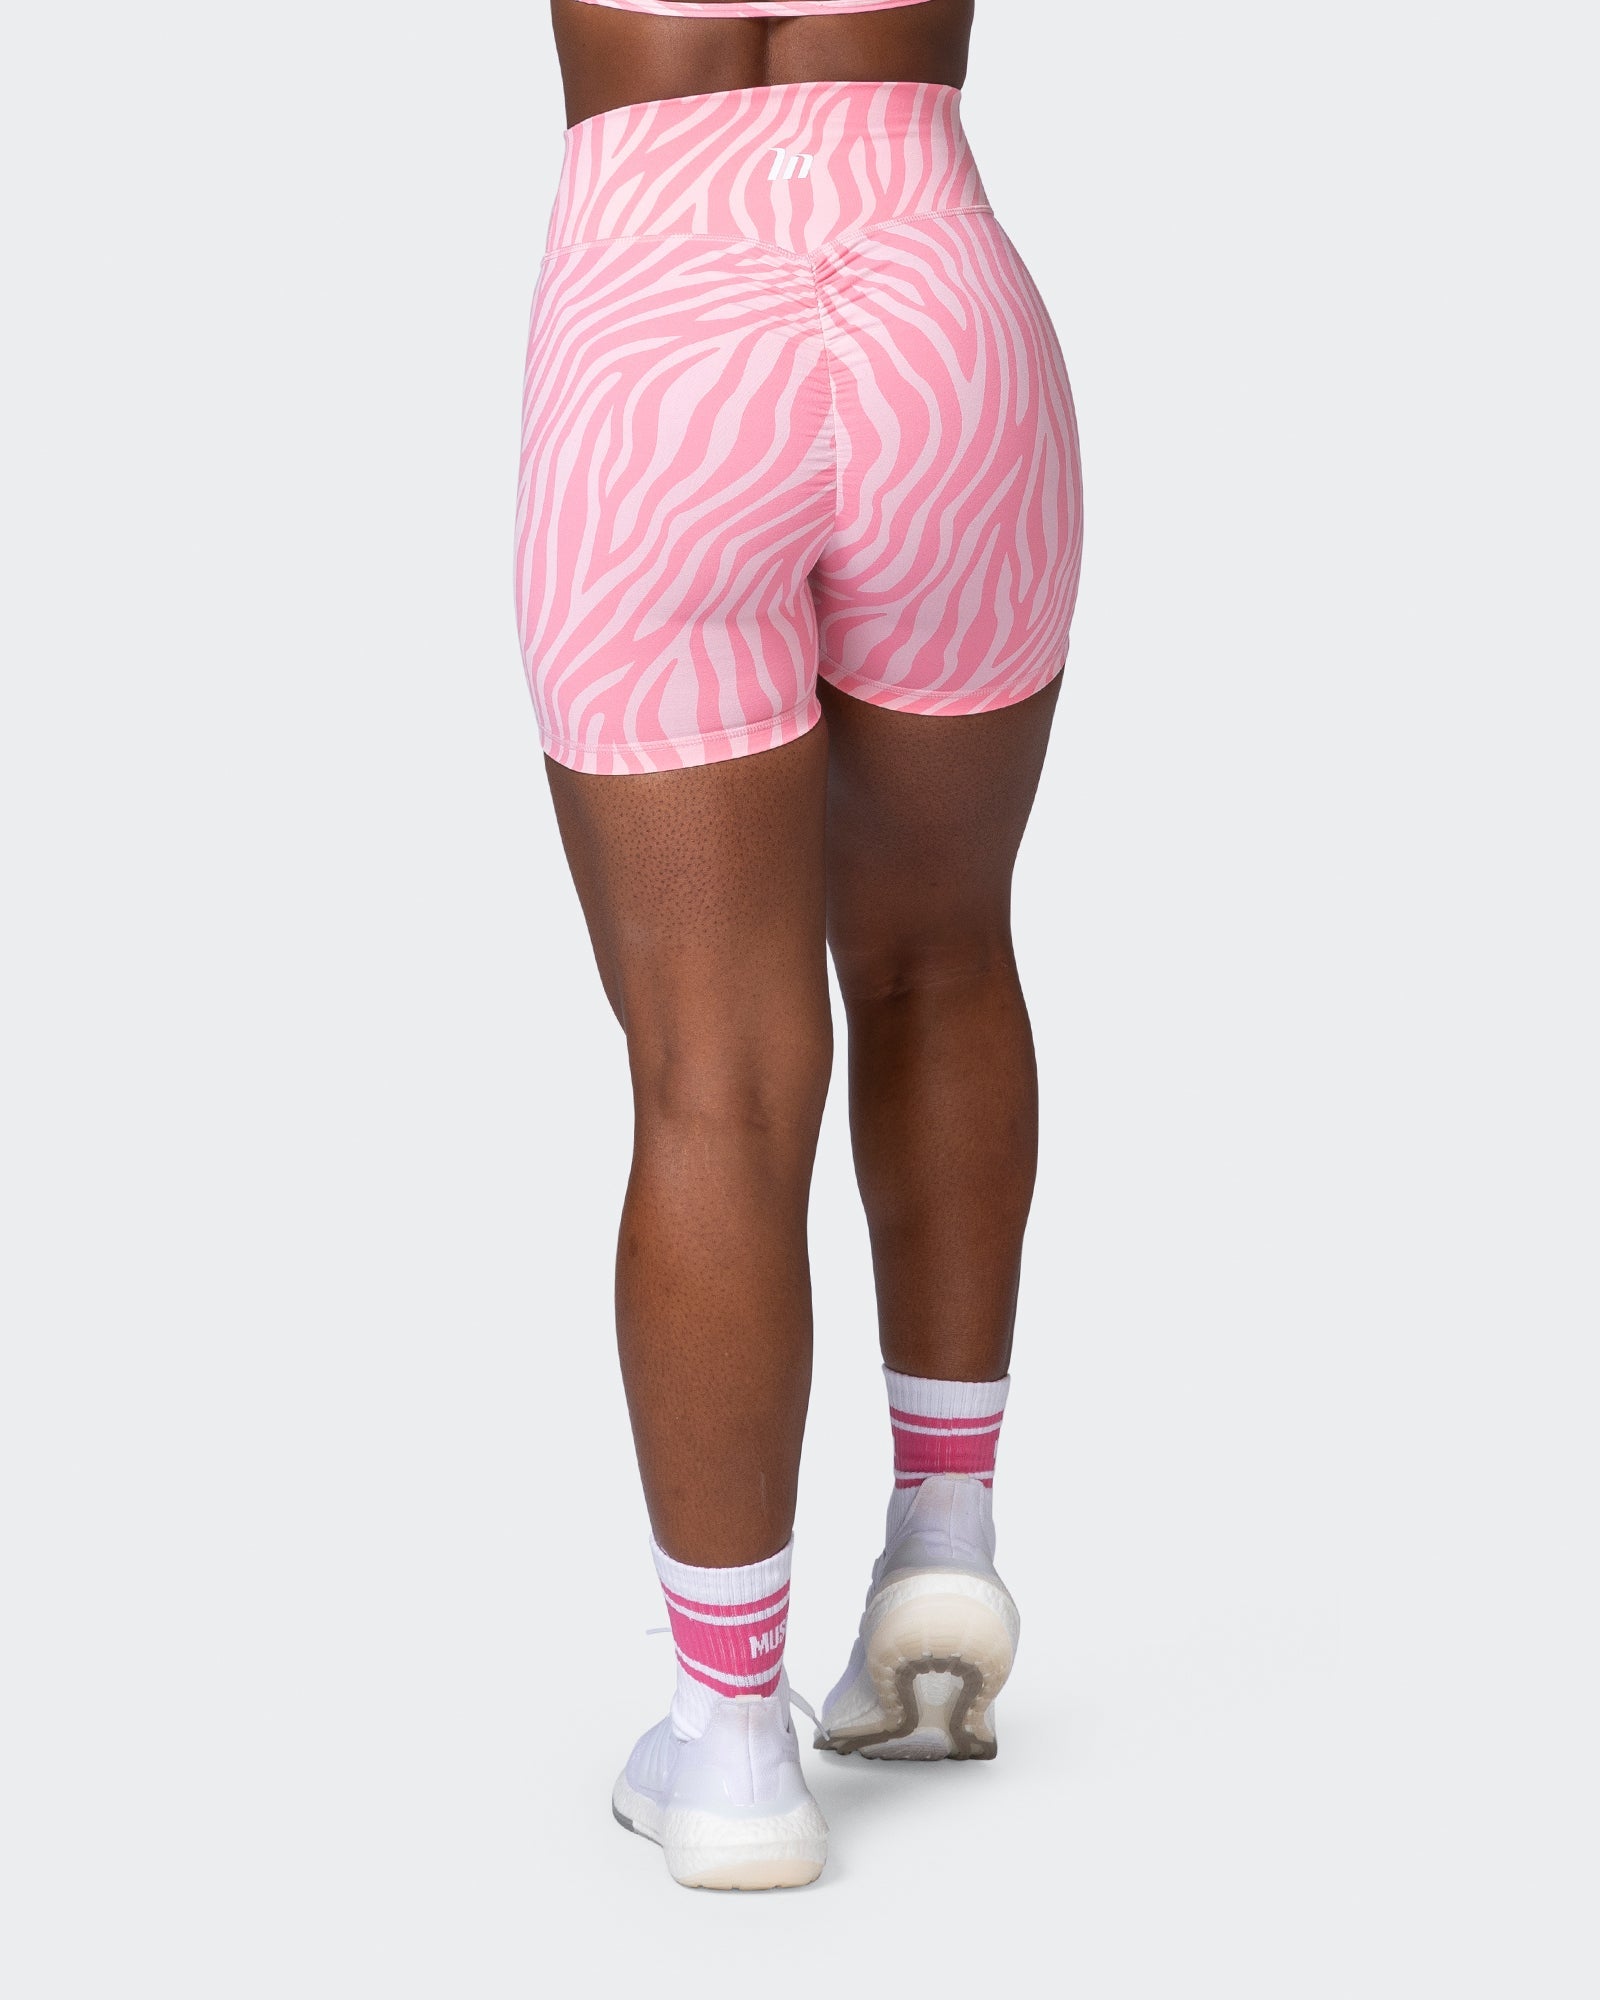 musclenation Shorts Signature Scrunch Midway Shorts - Strawberry Zebra Print